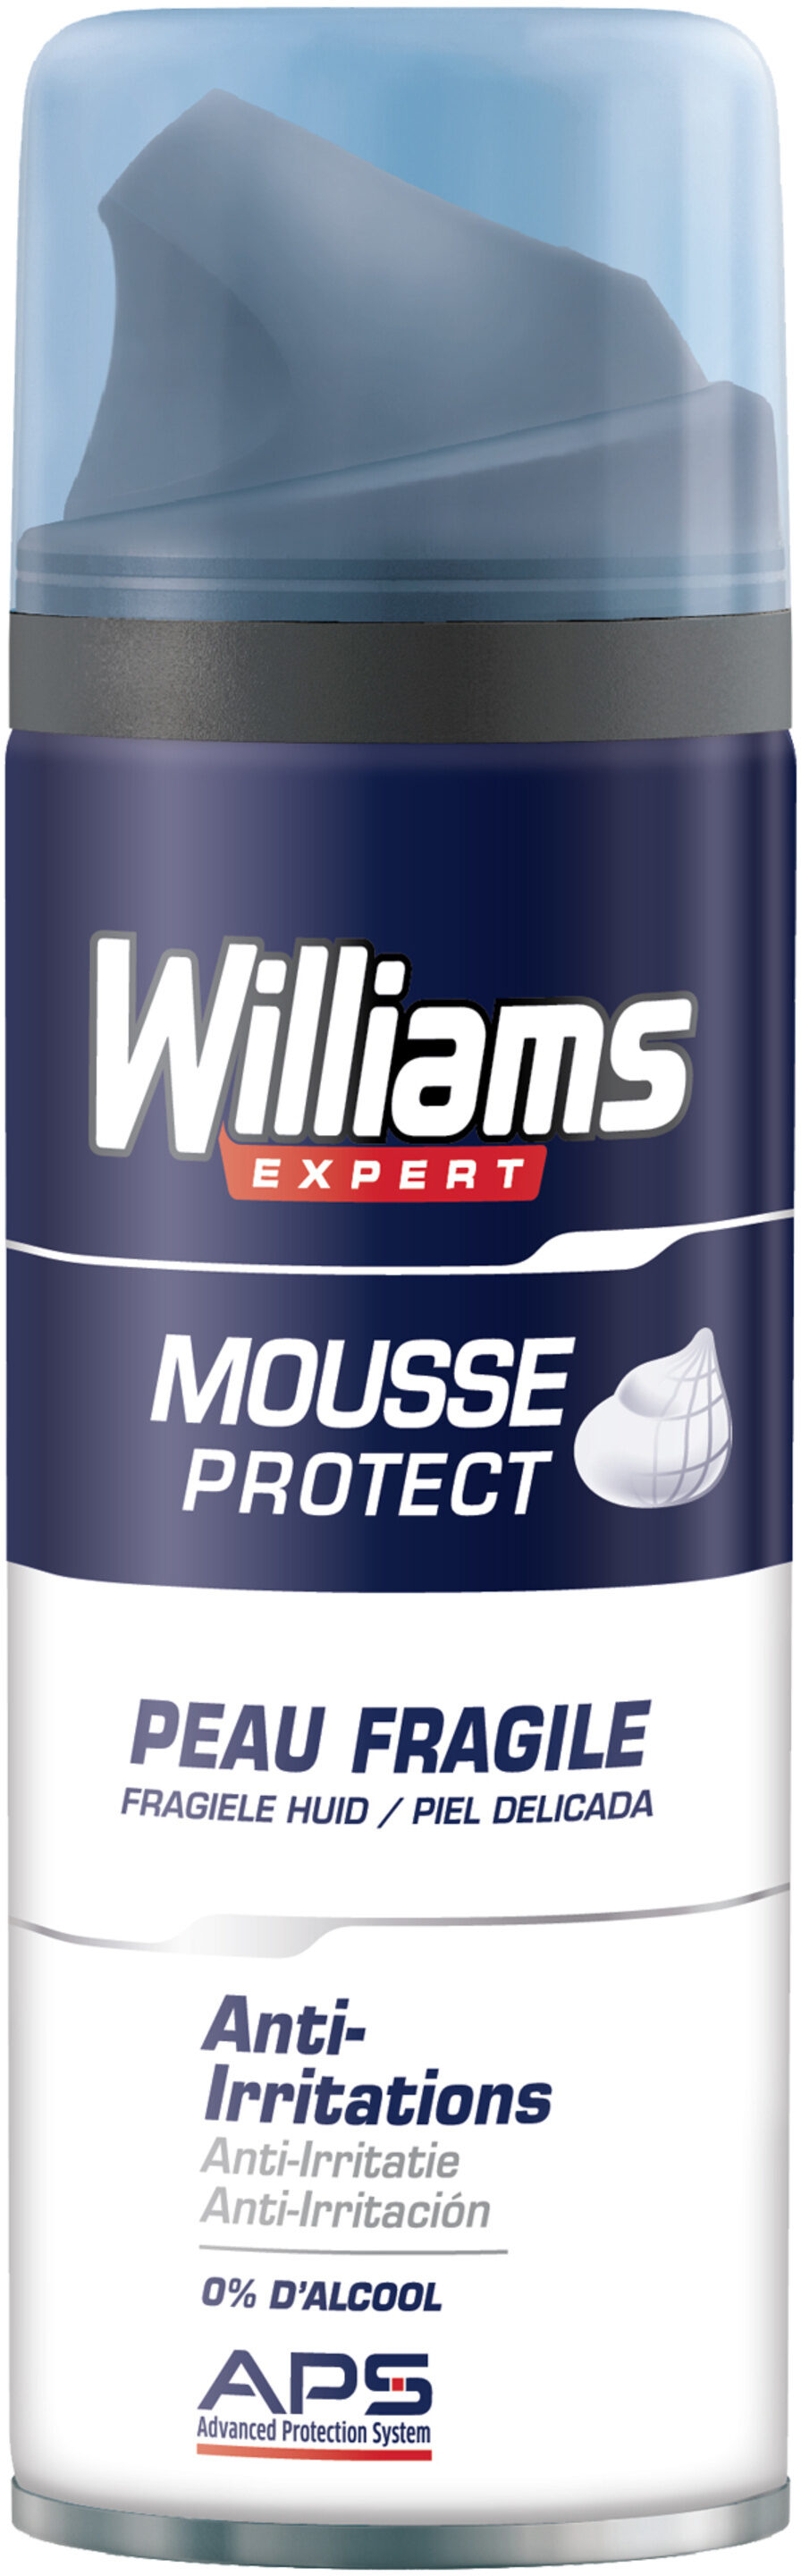 Williams Mousse à Raser Peau Fragile 200ml - Produit - fr